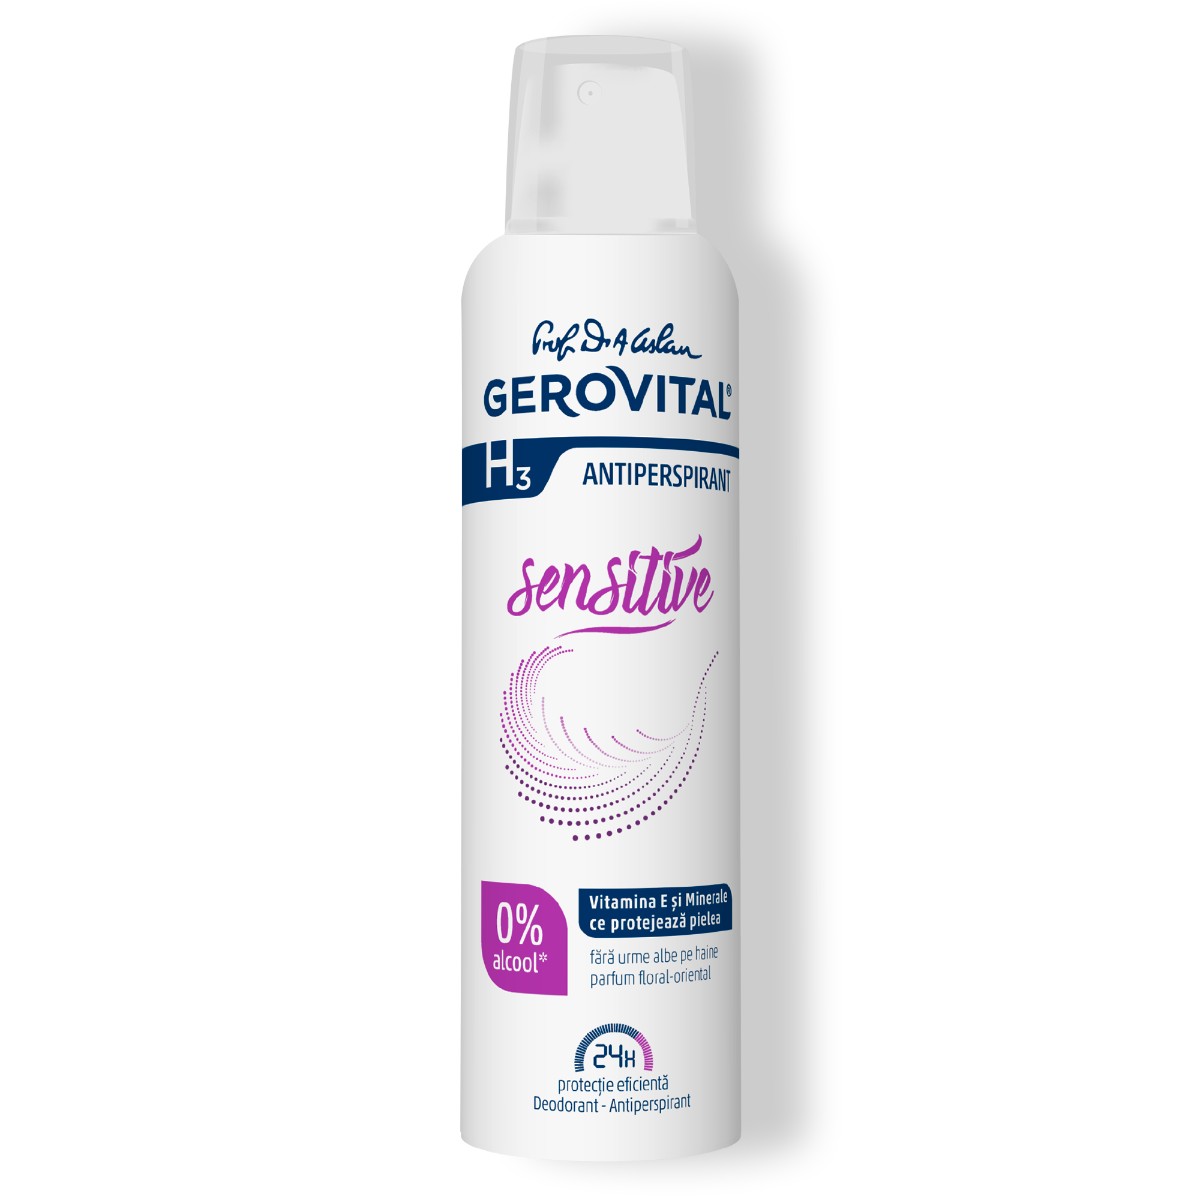 Deodorant Antiperspirant Gerovital H3 - Sensitive